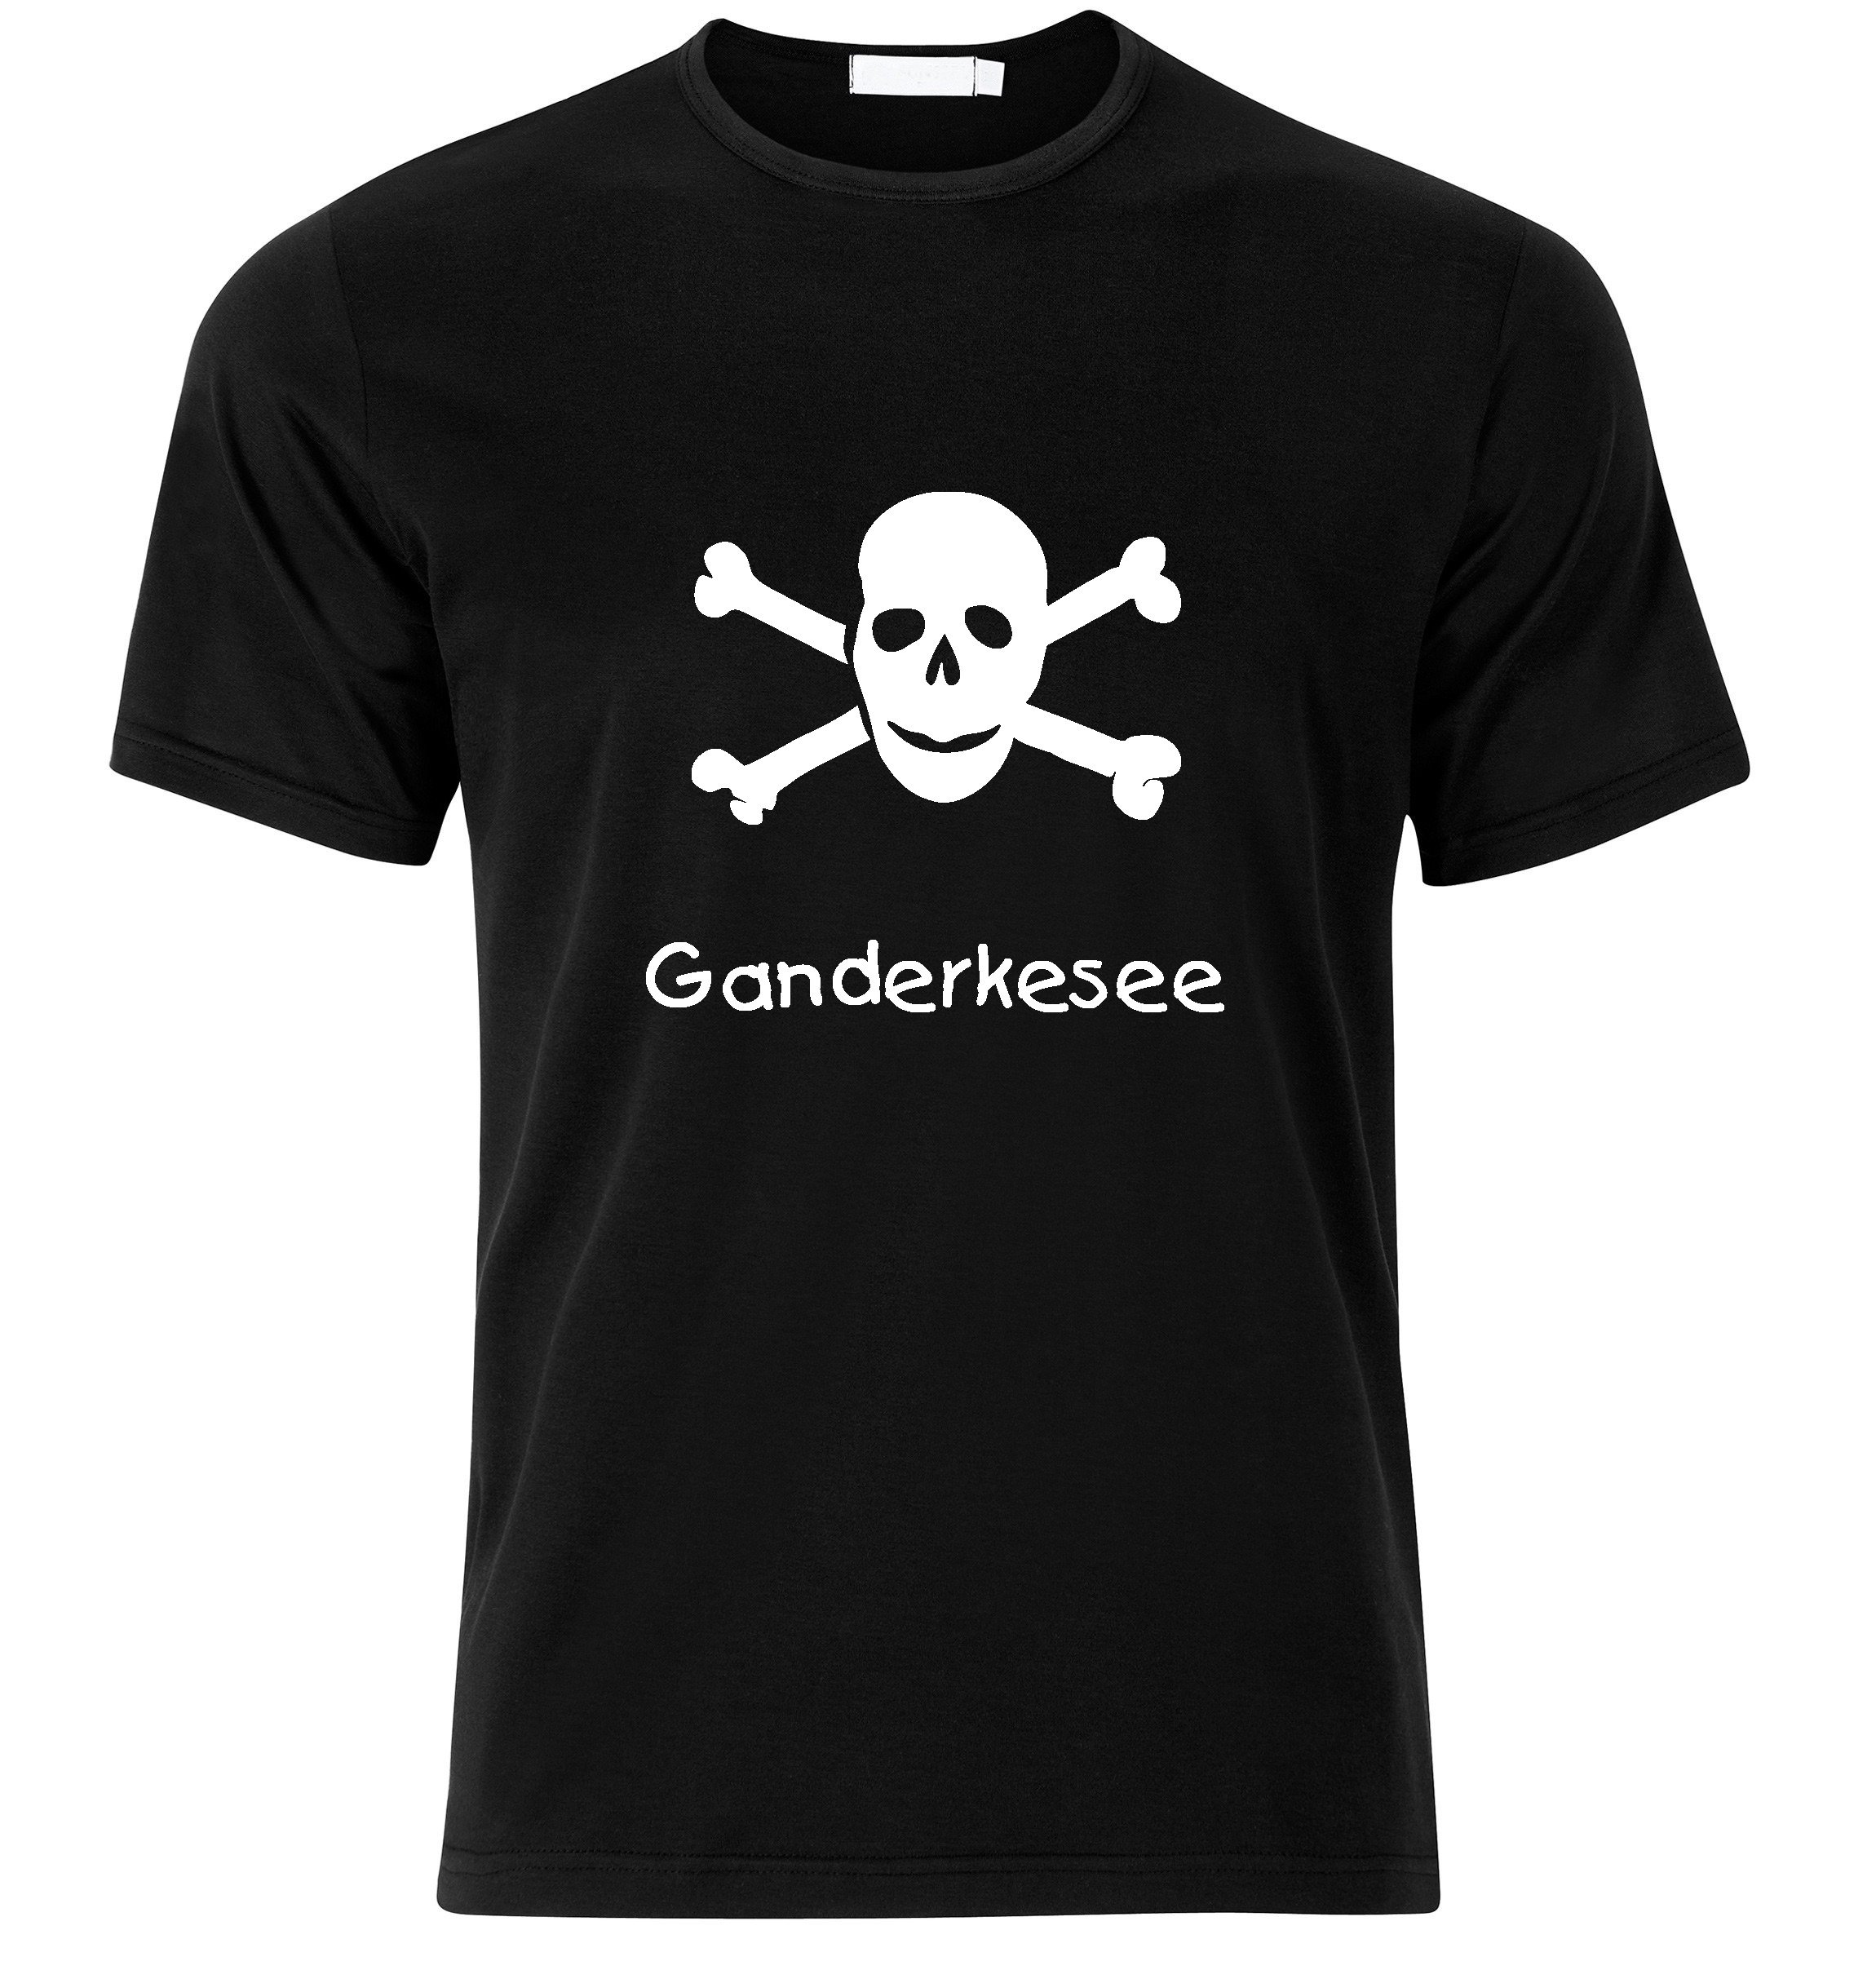 T-Shirt Ganderkesee Jolly Roger, Totenkopf